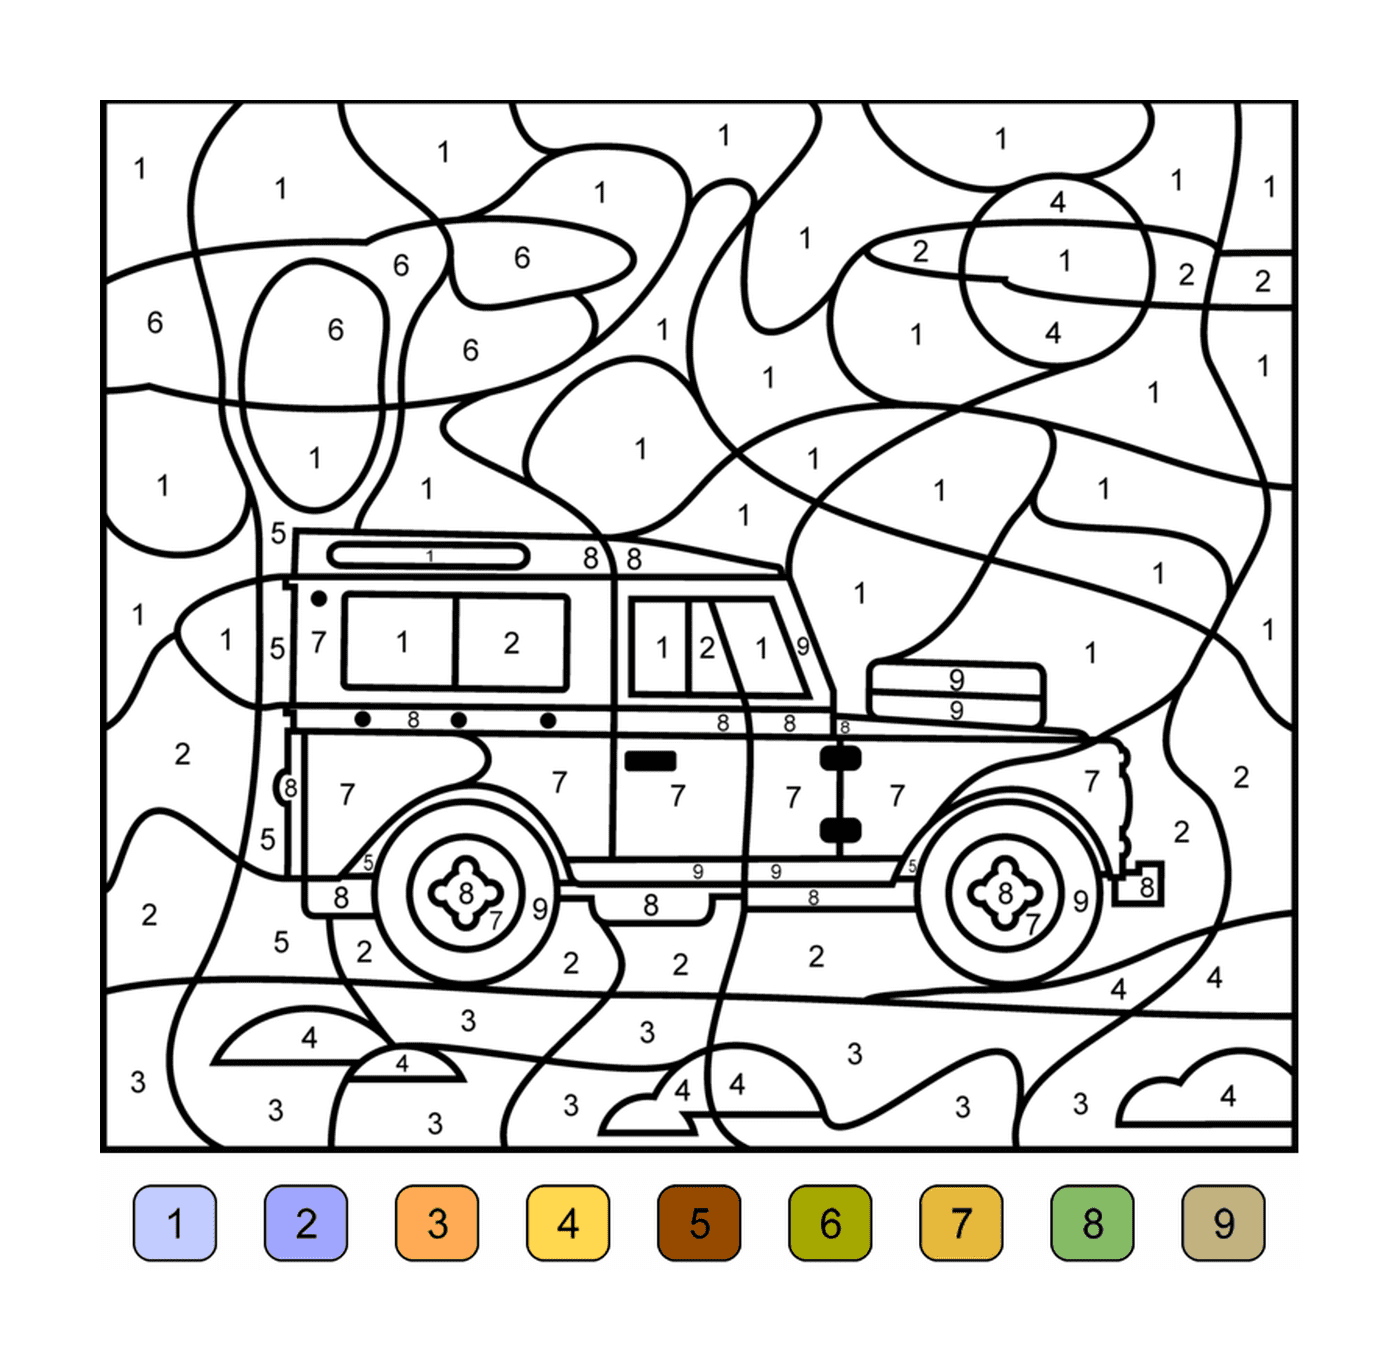  Un camion in colorazione per numero 